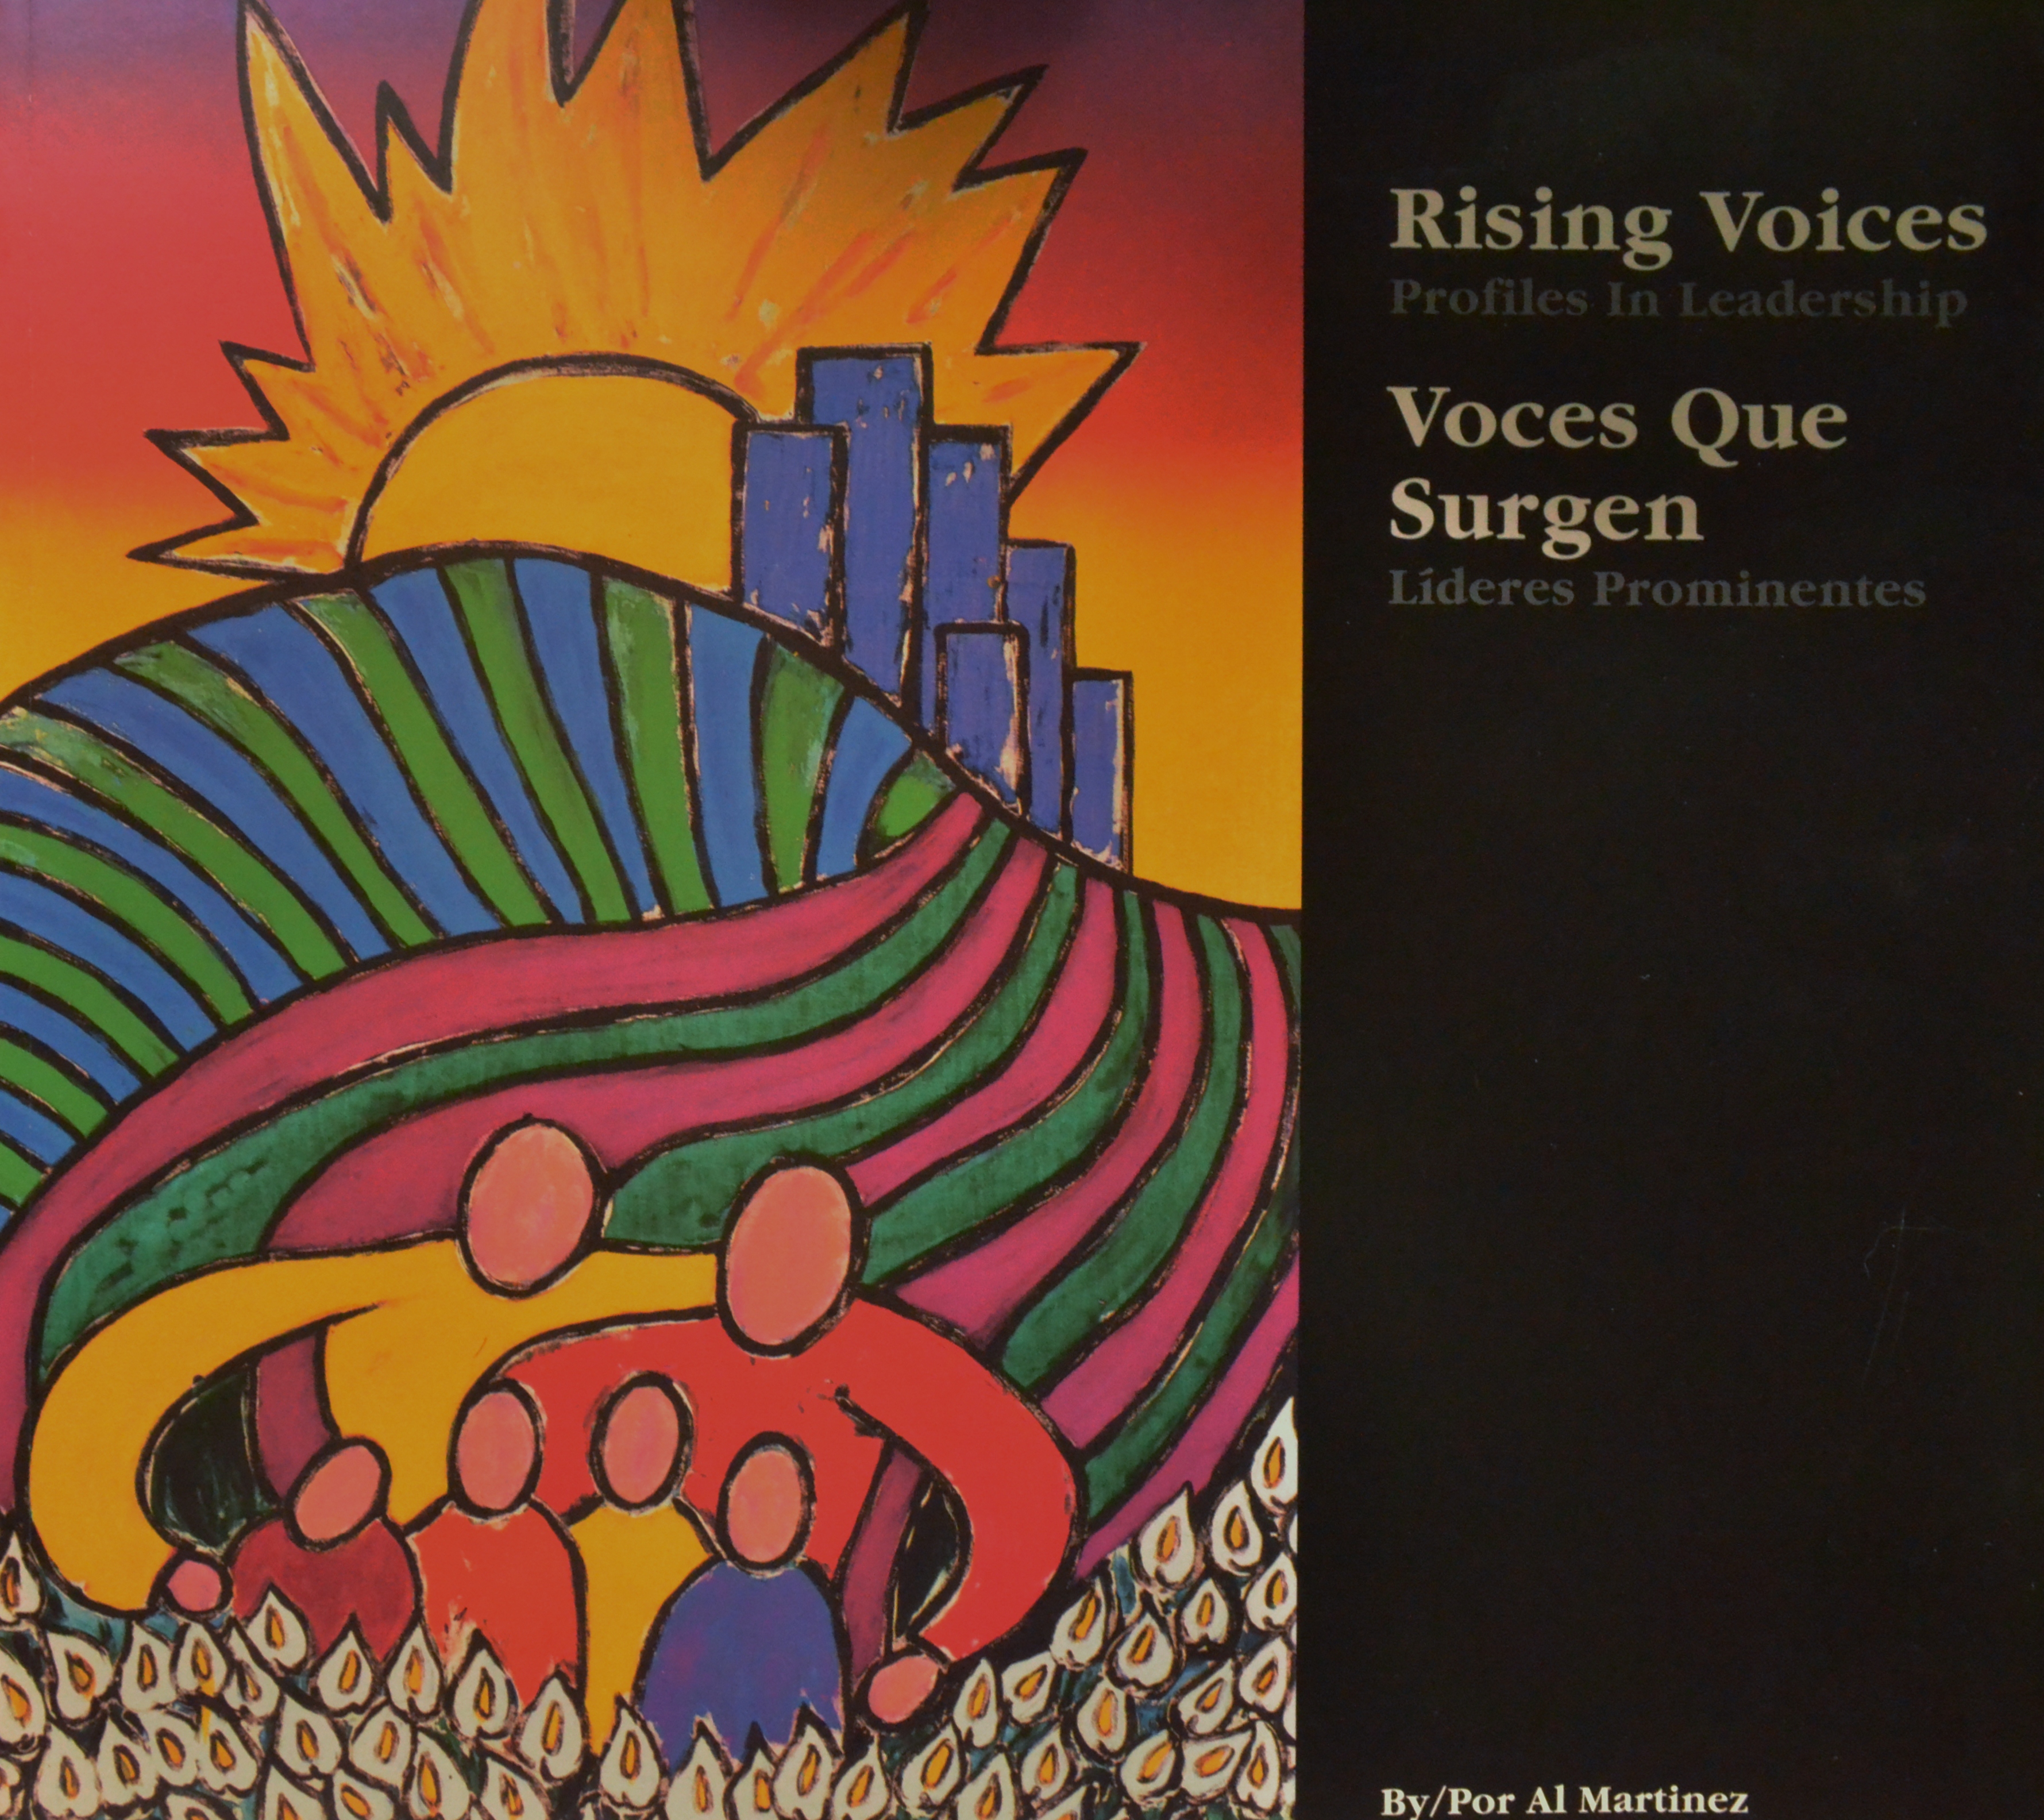 Latio Author Al Martinez's book titled: "Rising Voices"